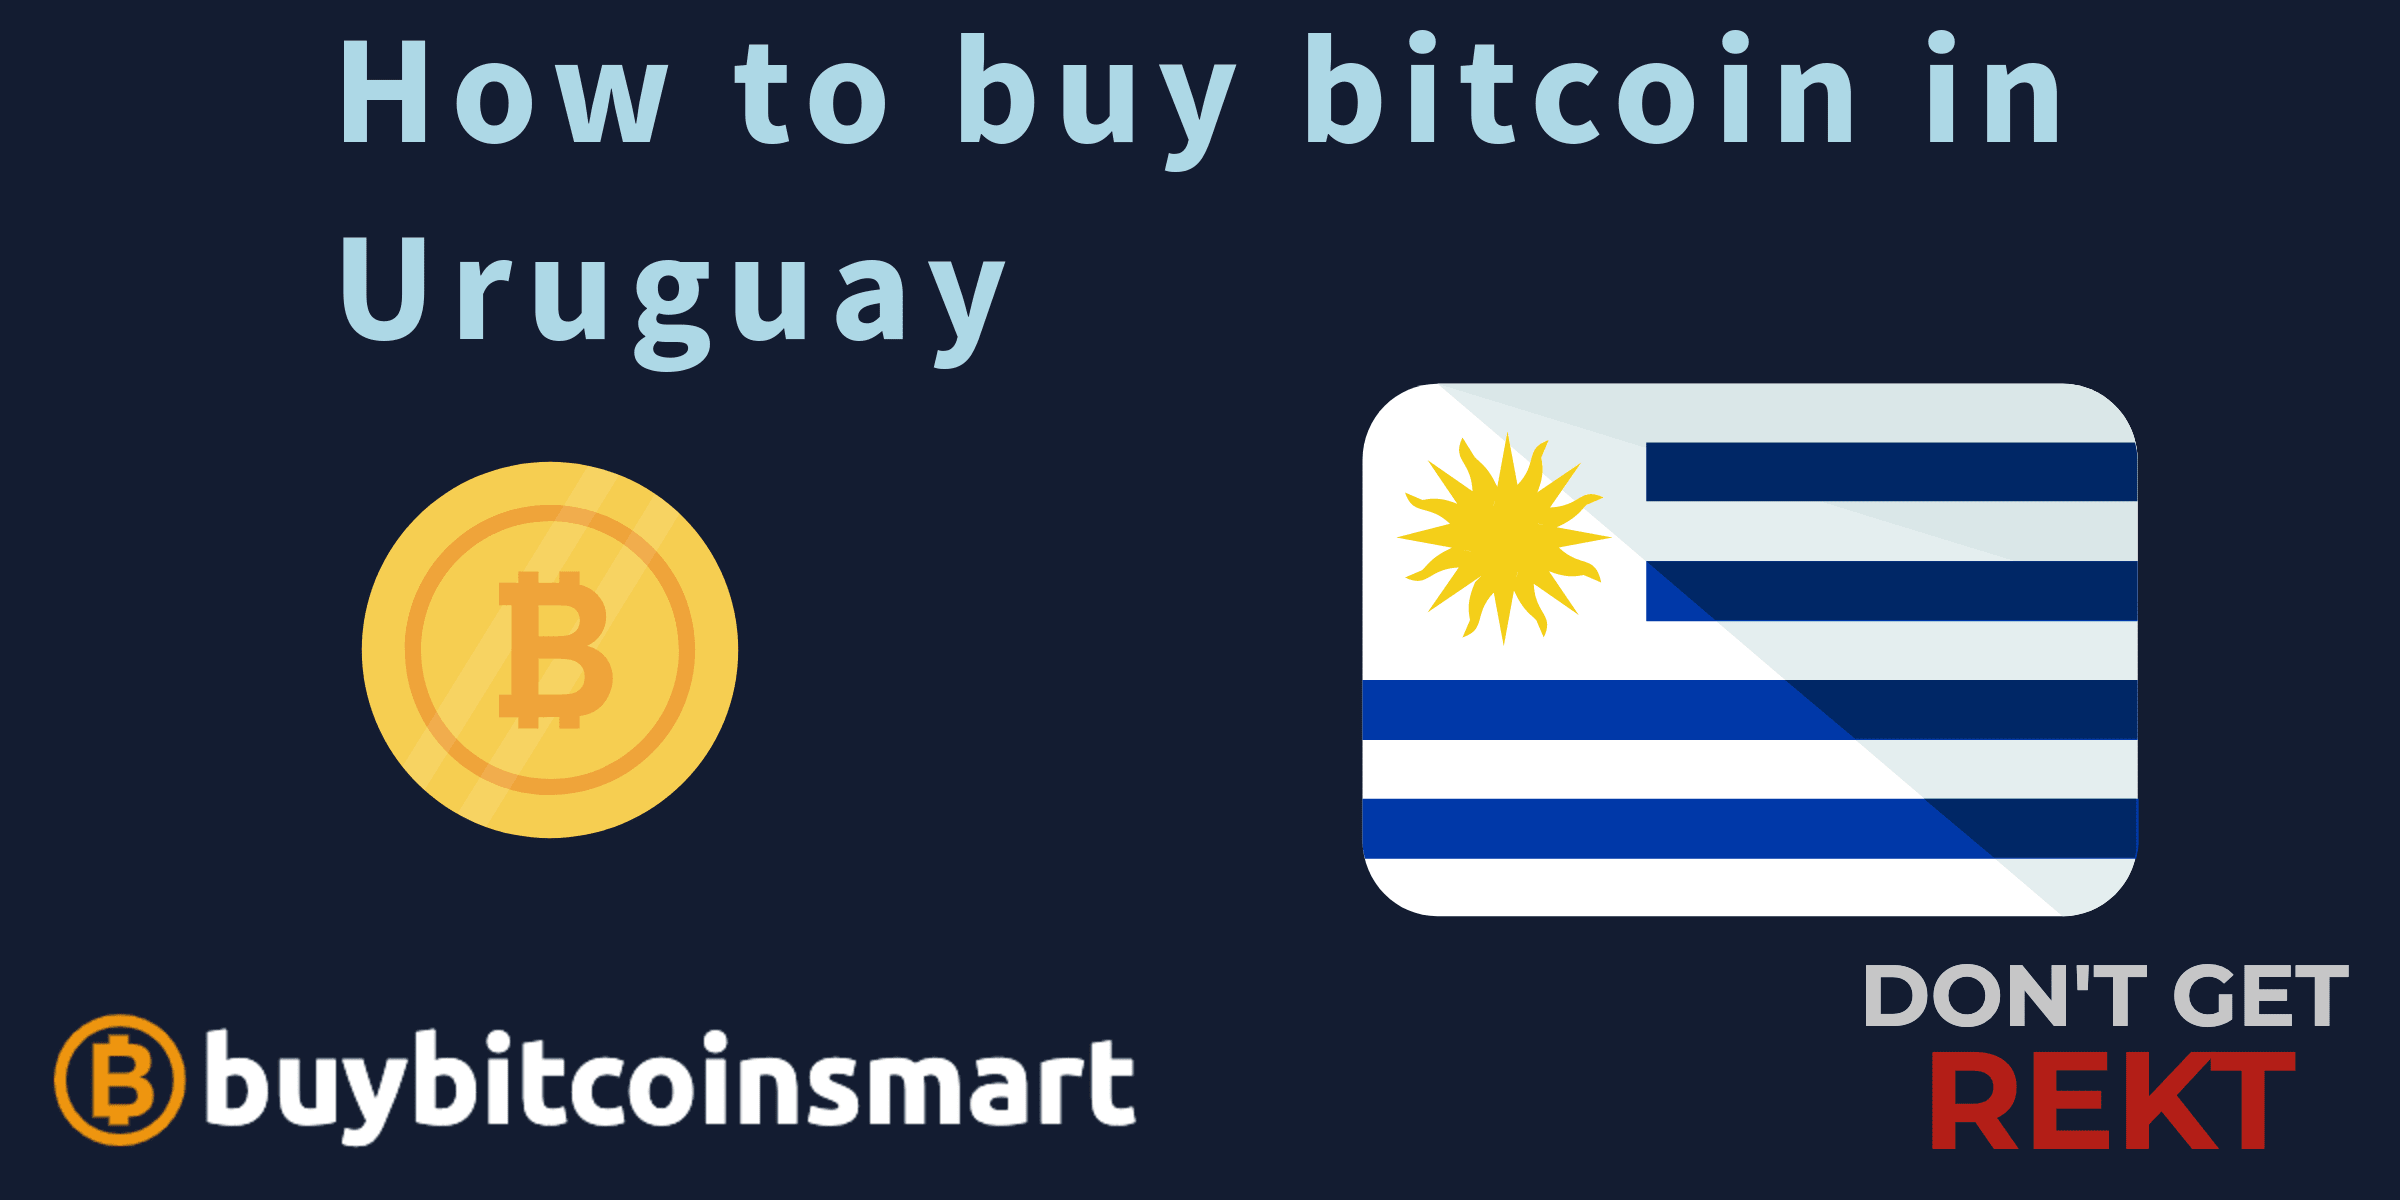 How to buy bitcoin in Uruguay